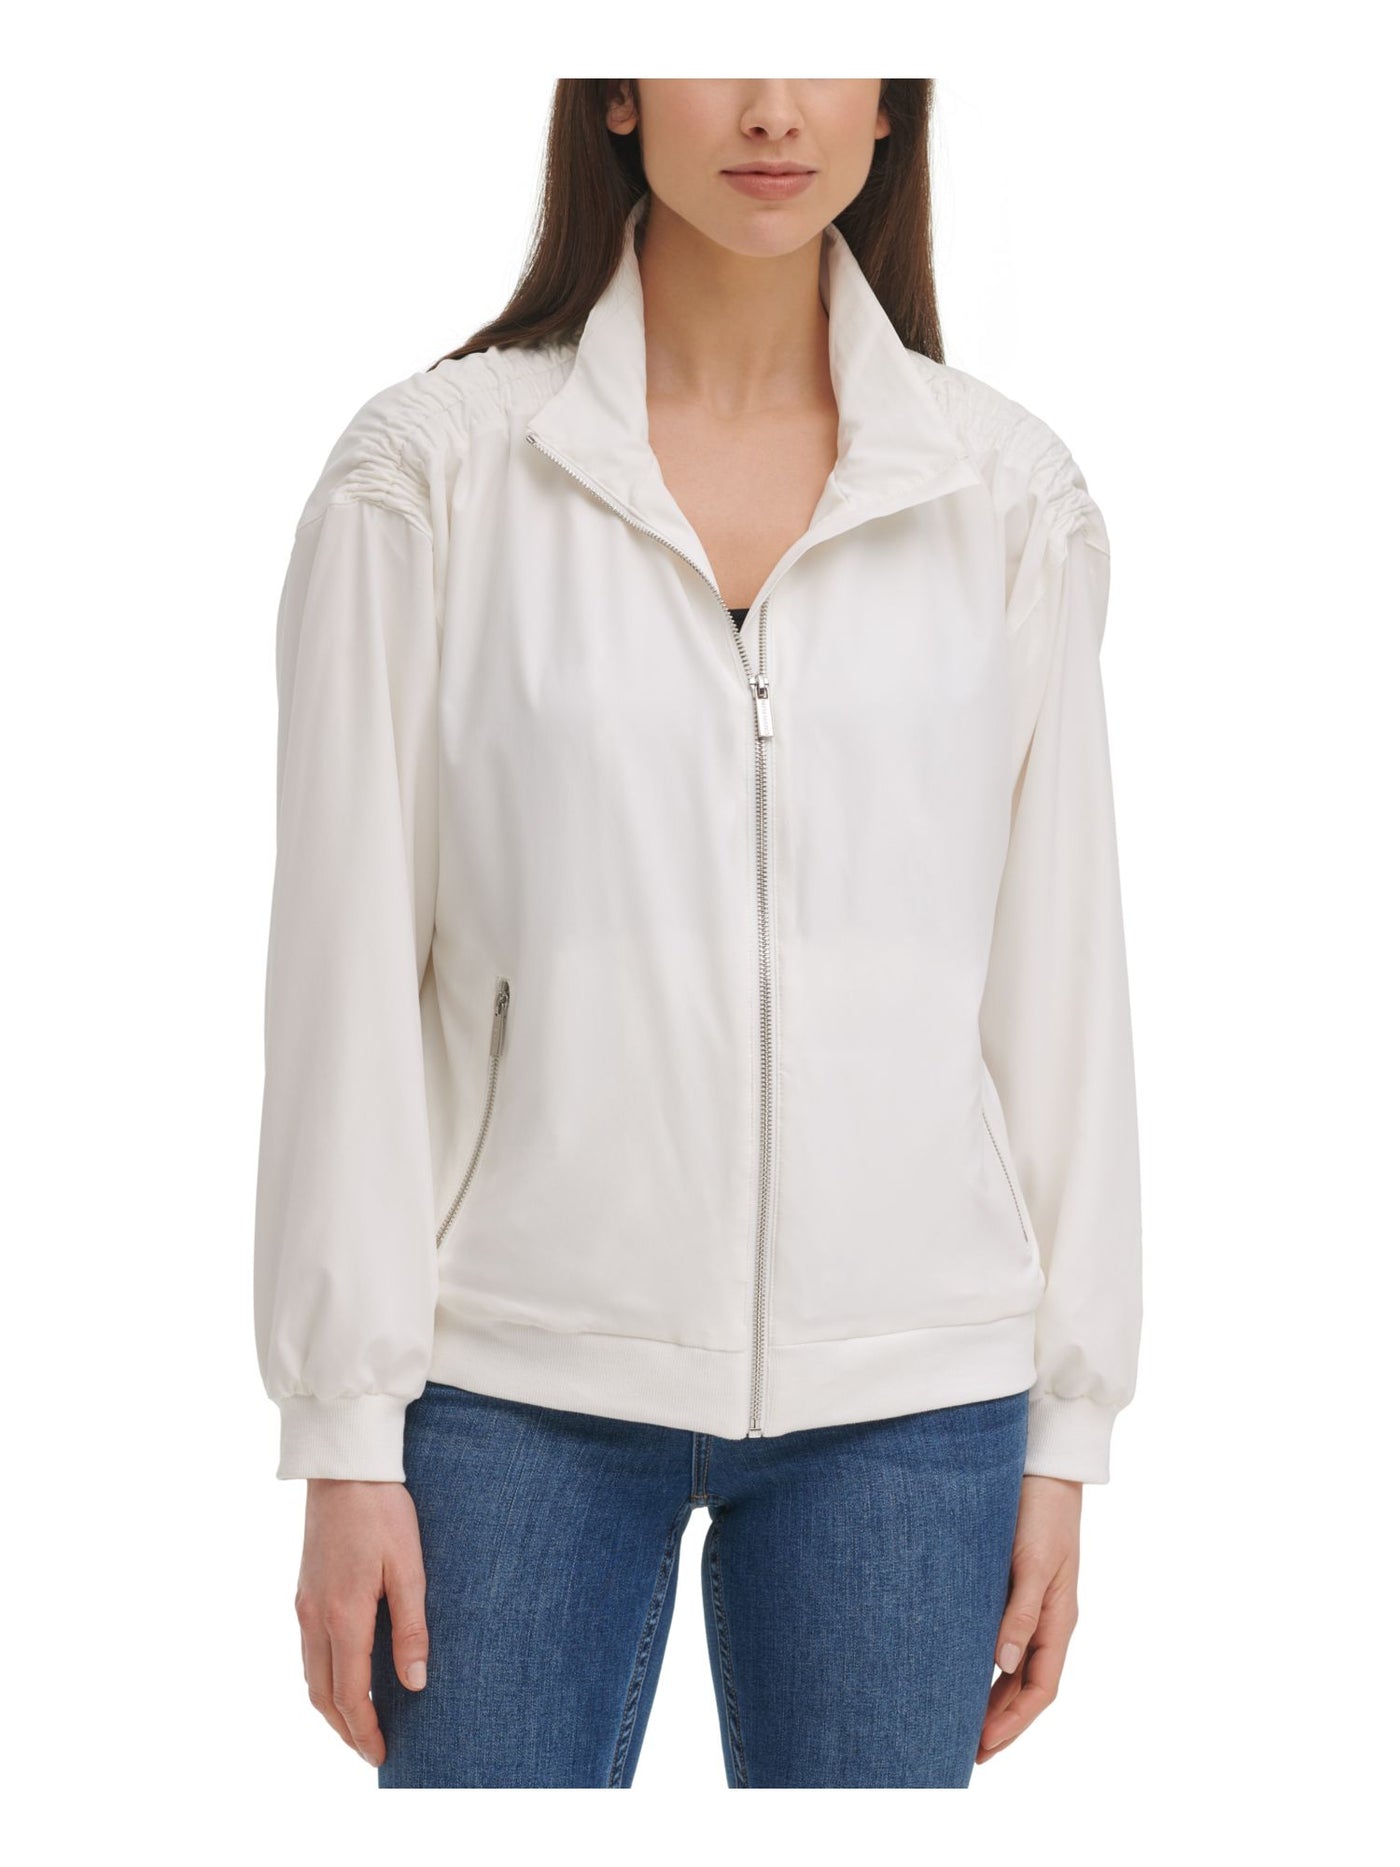 CALVIN KLEIN Womens White Stretch Pocketed Shirred Lightweight Zip Up Jacket L